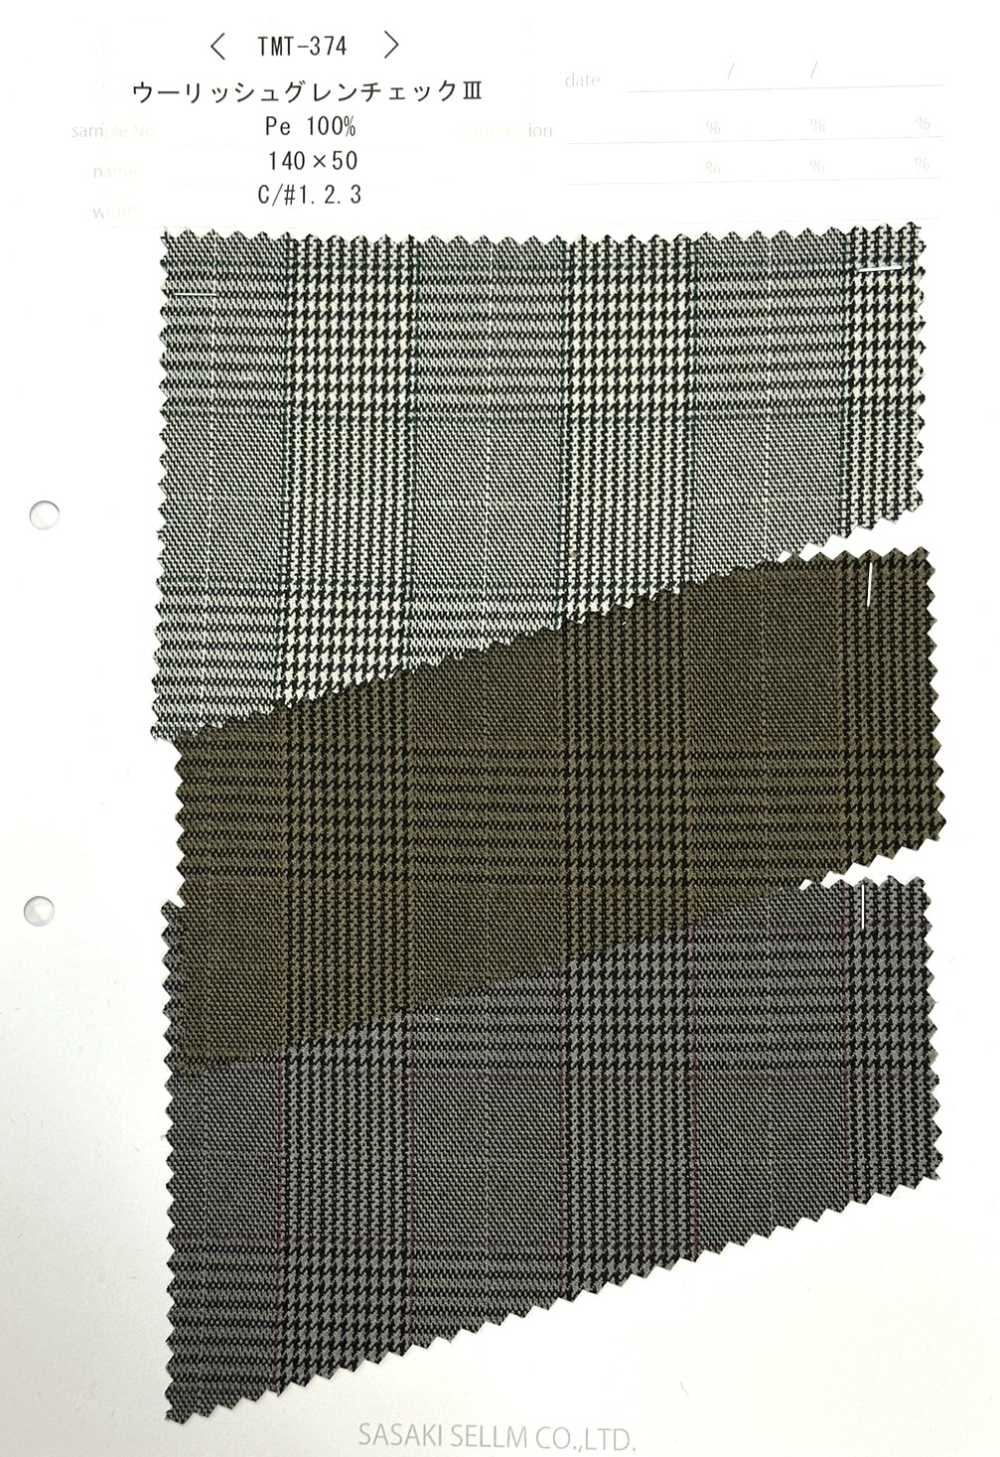 TMT-374 Carreaux Glen En Laine Ⅲ[Fabrication De Textile] SASAKISELLM